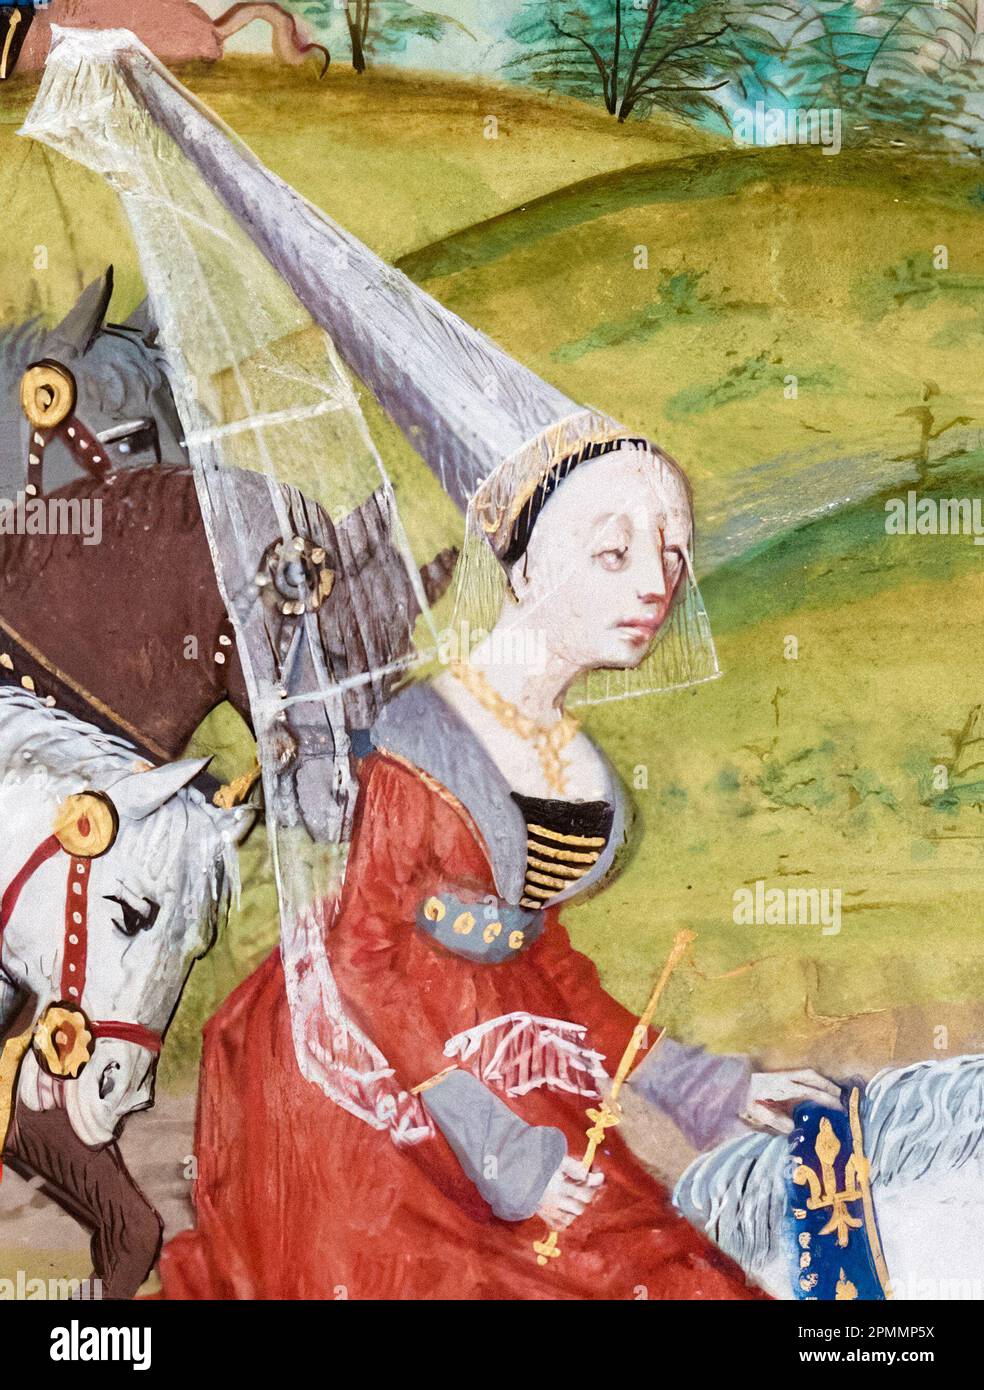 Isabella de France (vers 1295-1358), reine d'Angleterre (1308-1327), épouse du roi Edward II et Regent d'Angleterre (1327-1330), peinture manuscrite illuminée de Jean Froissart, vers 1475 Banque D'Images